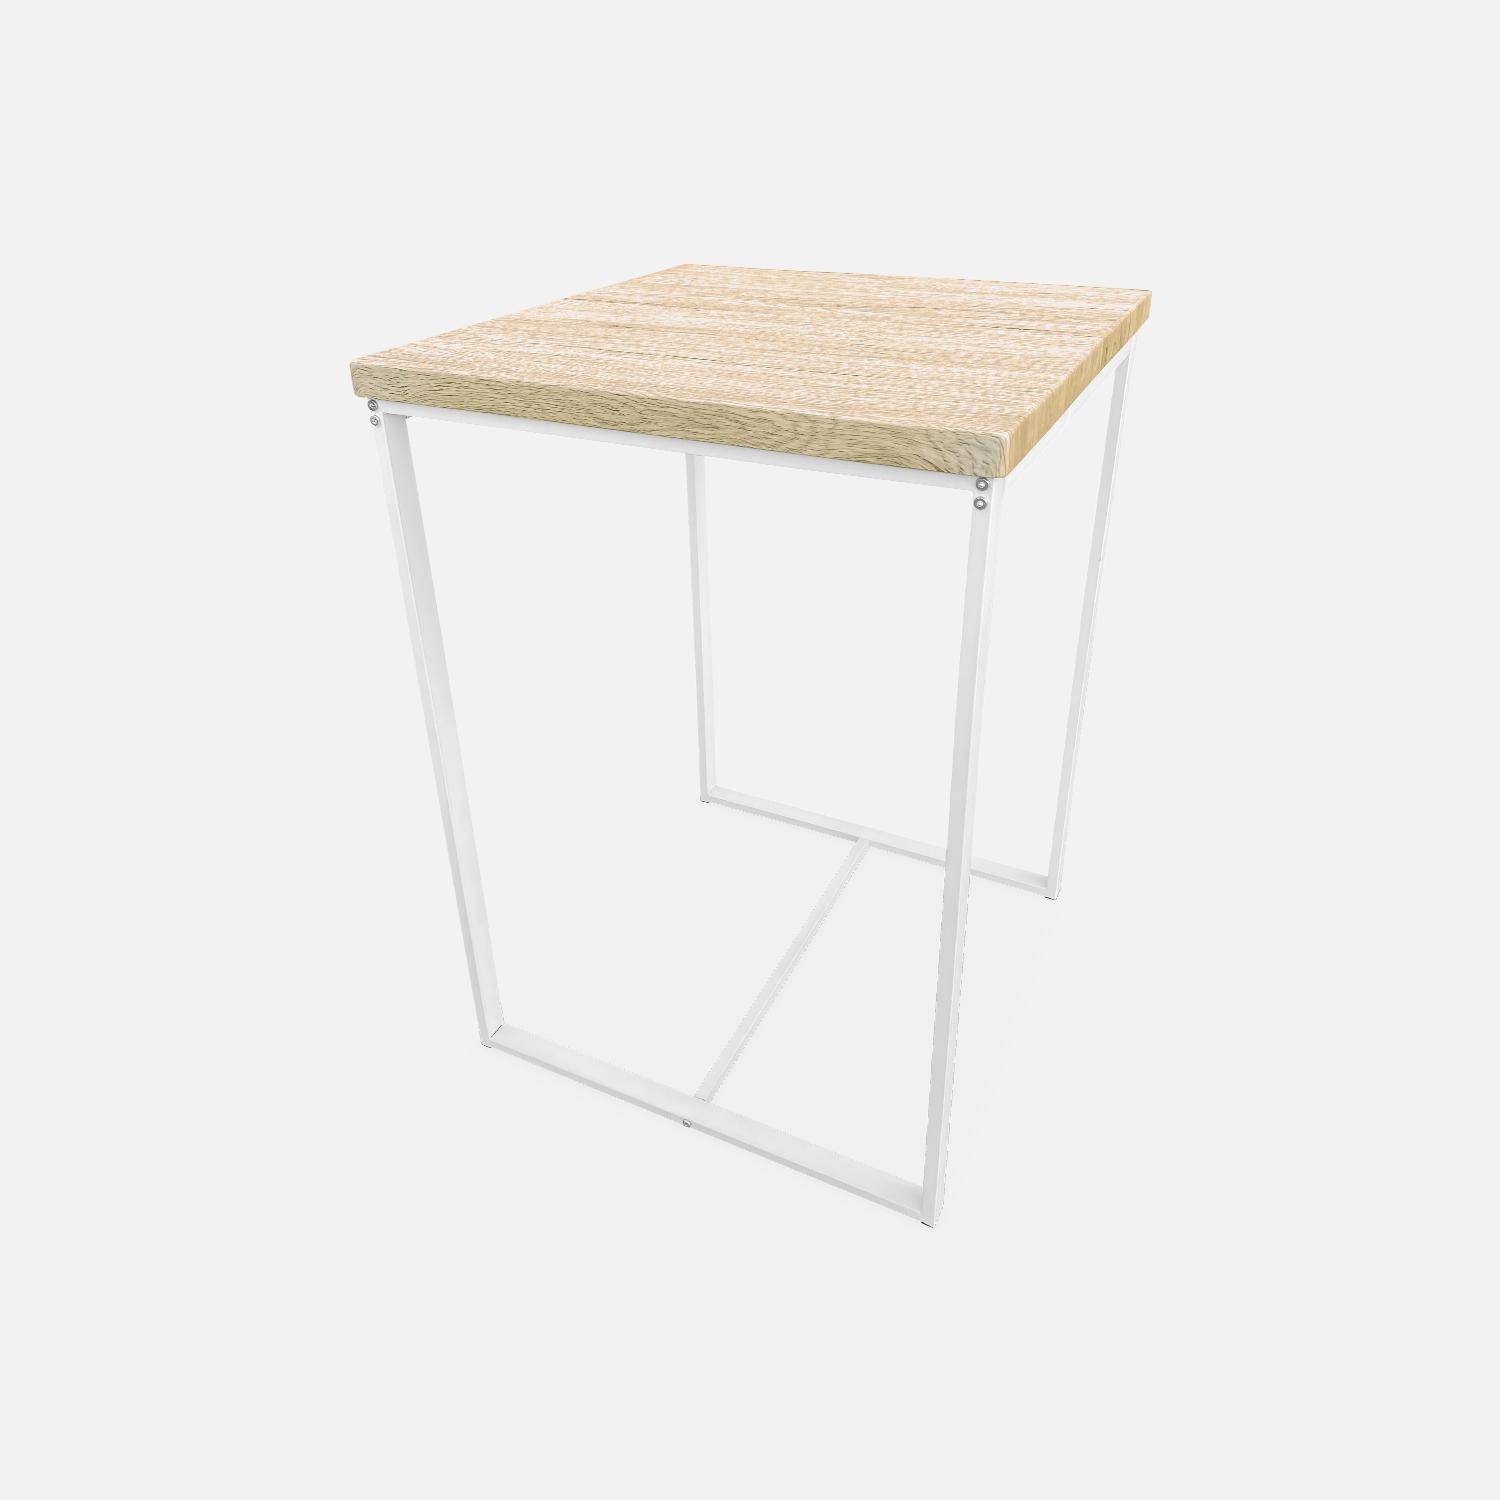 Juego de mesa alta cuadrada - Loft - con 2 taburetes de bar, decoración de acero y madera, empotrado, diseño Photo4